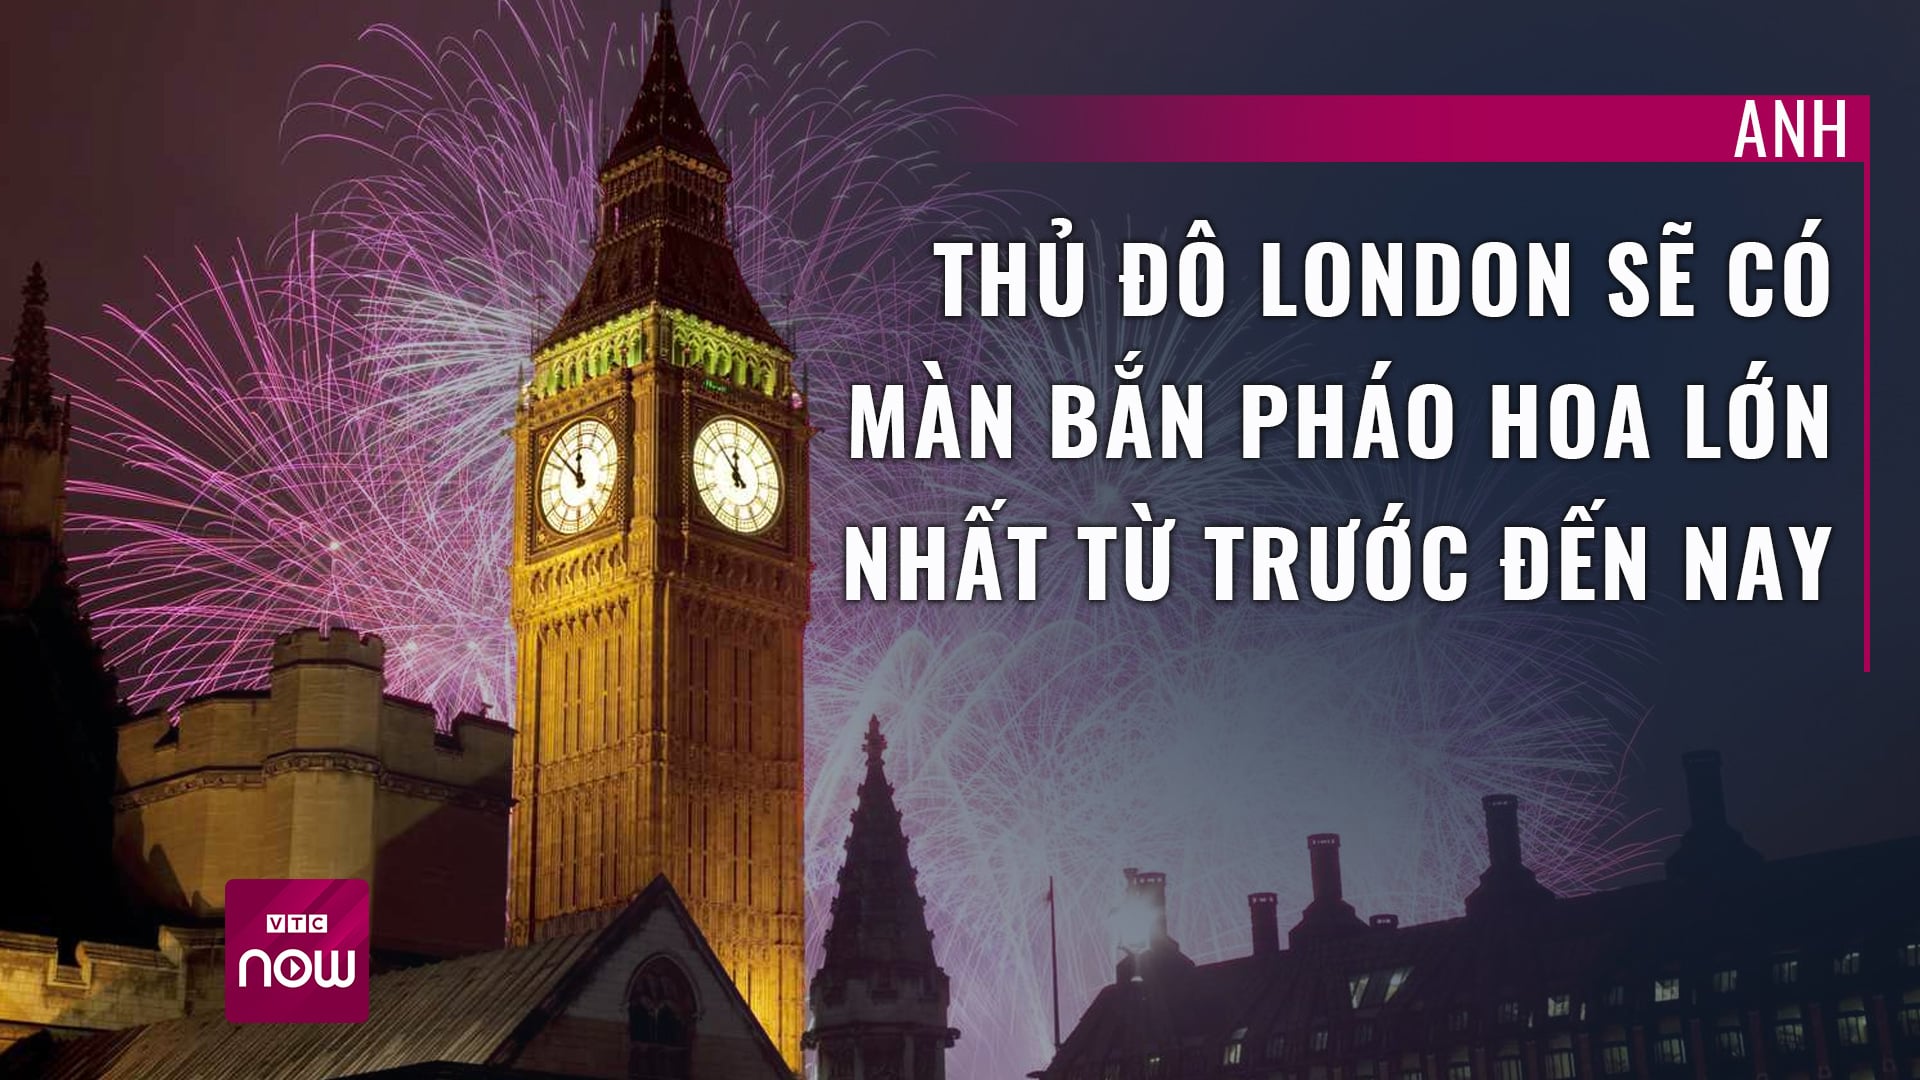 Anh: Thủ đô London có màn bắn pháo hoa lớn nhất từ trước đến nay